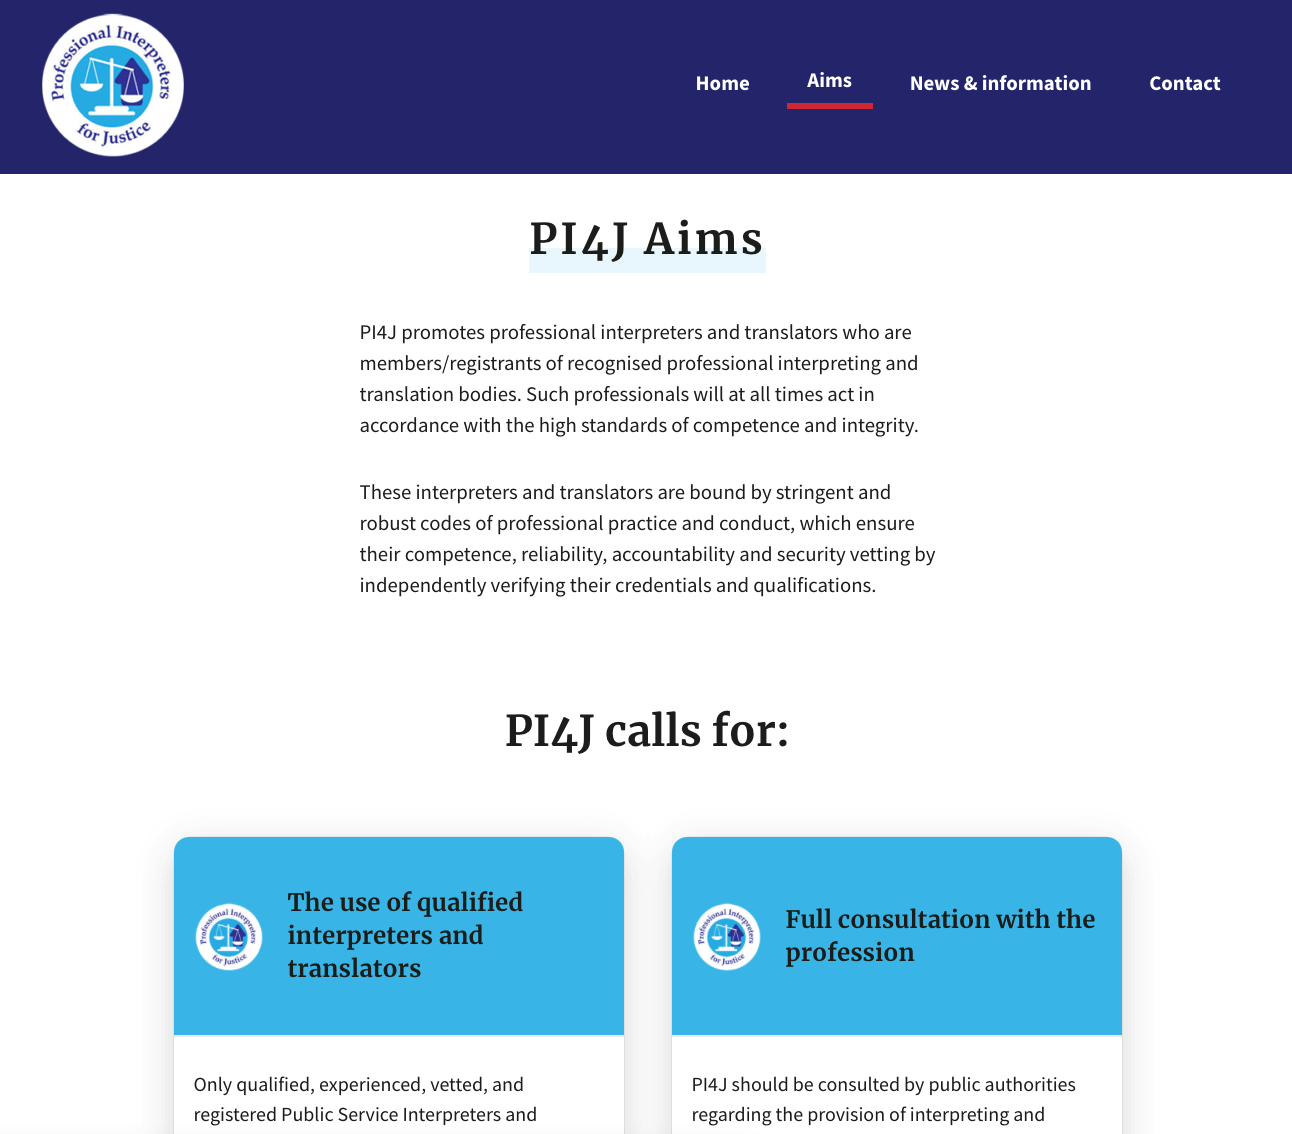 PI4J Aims webpage